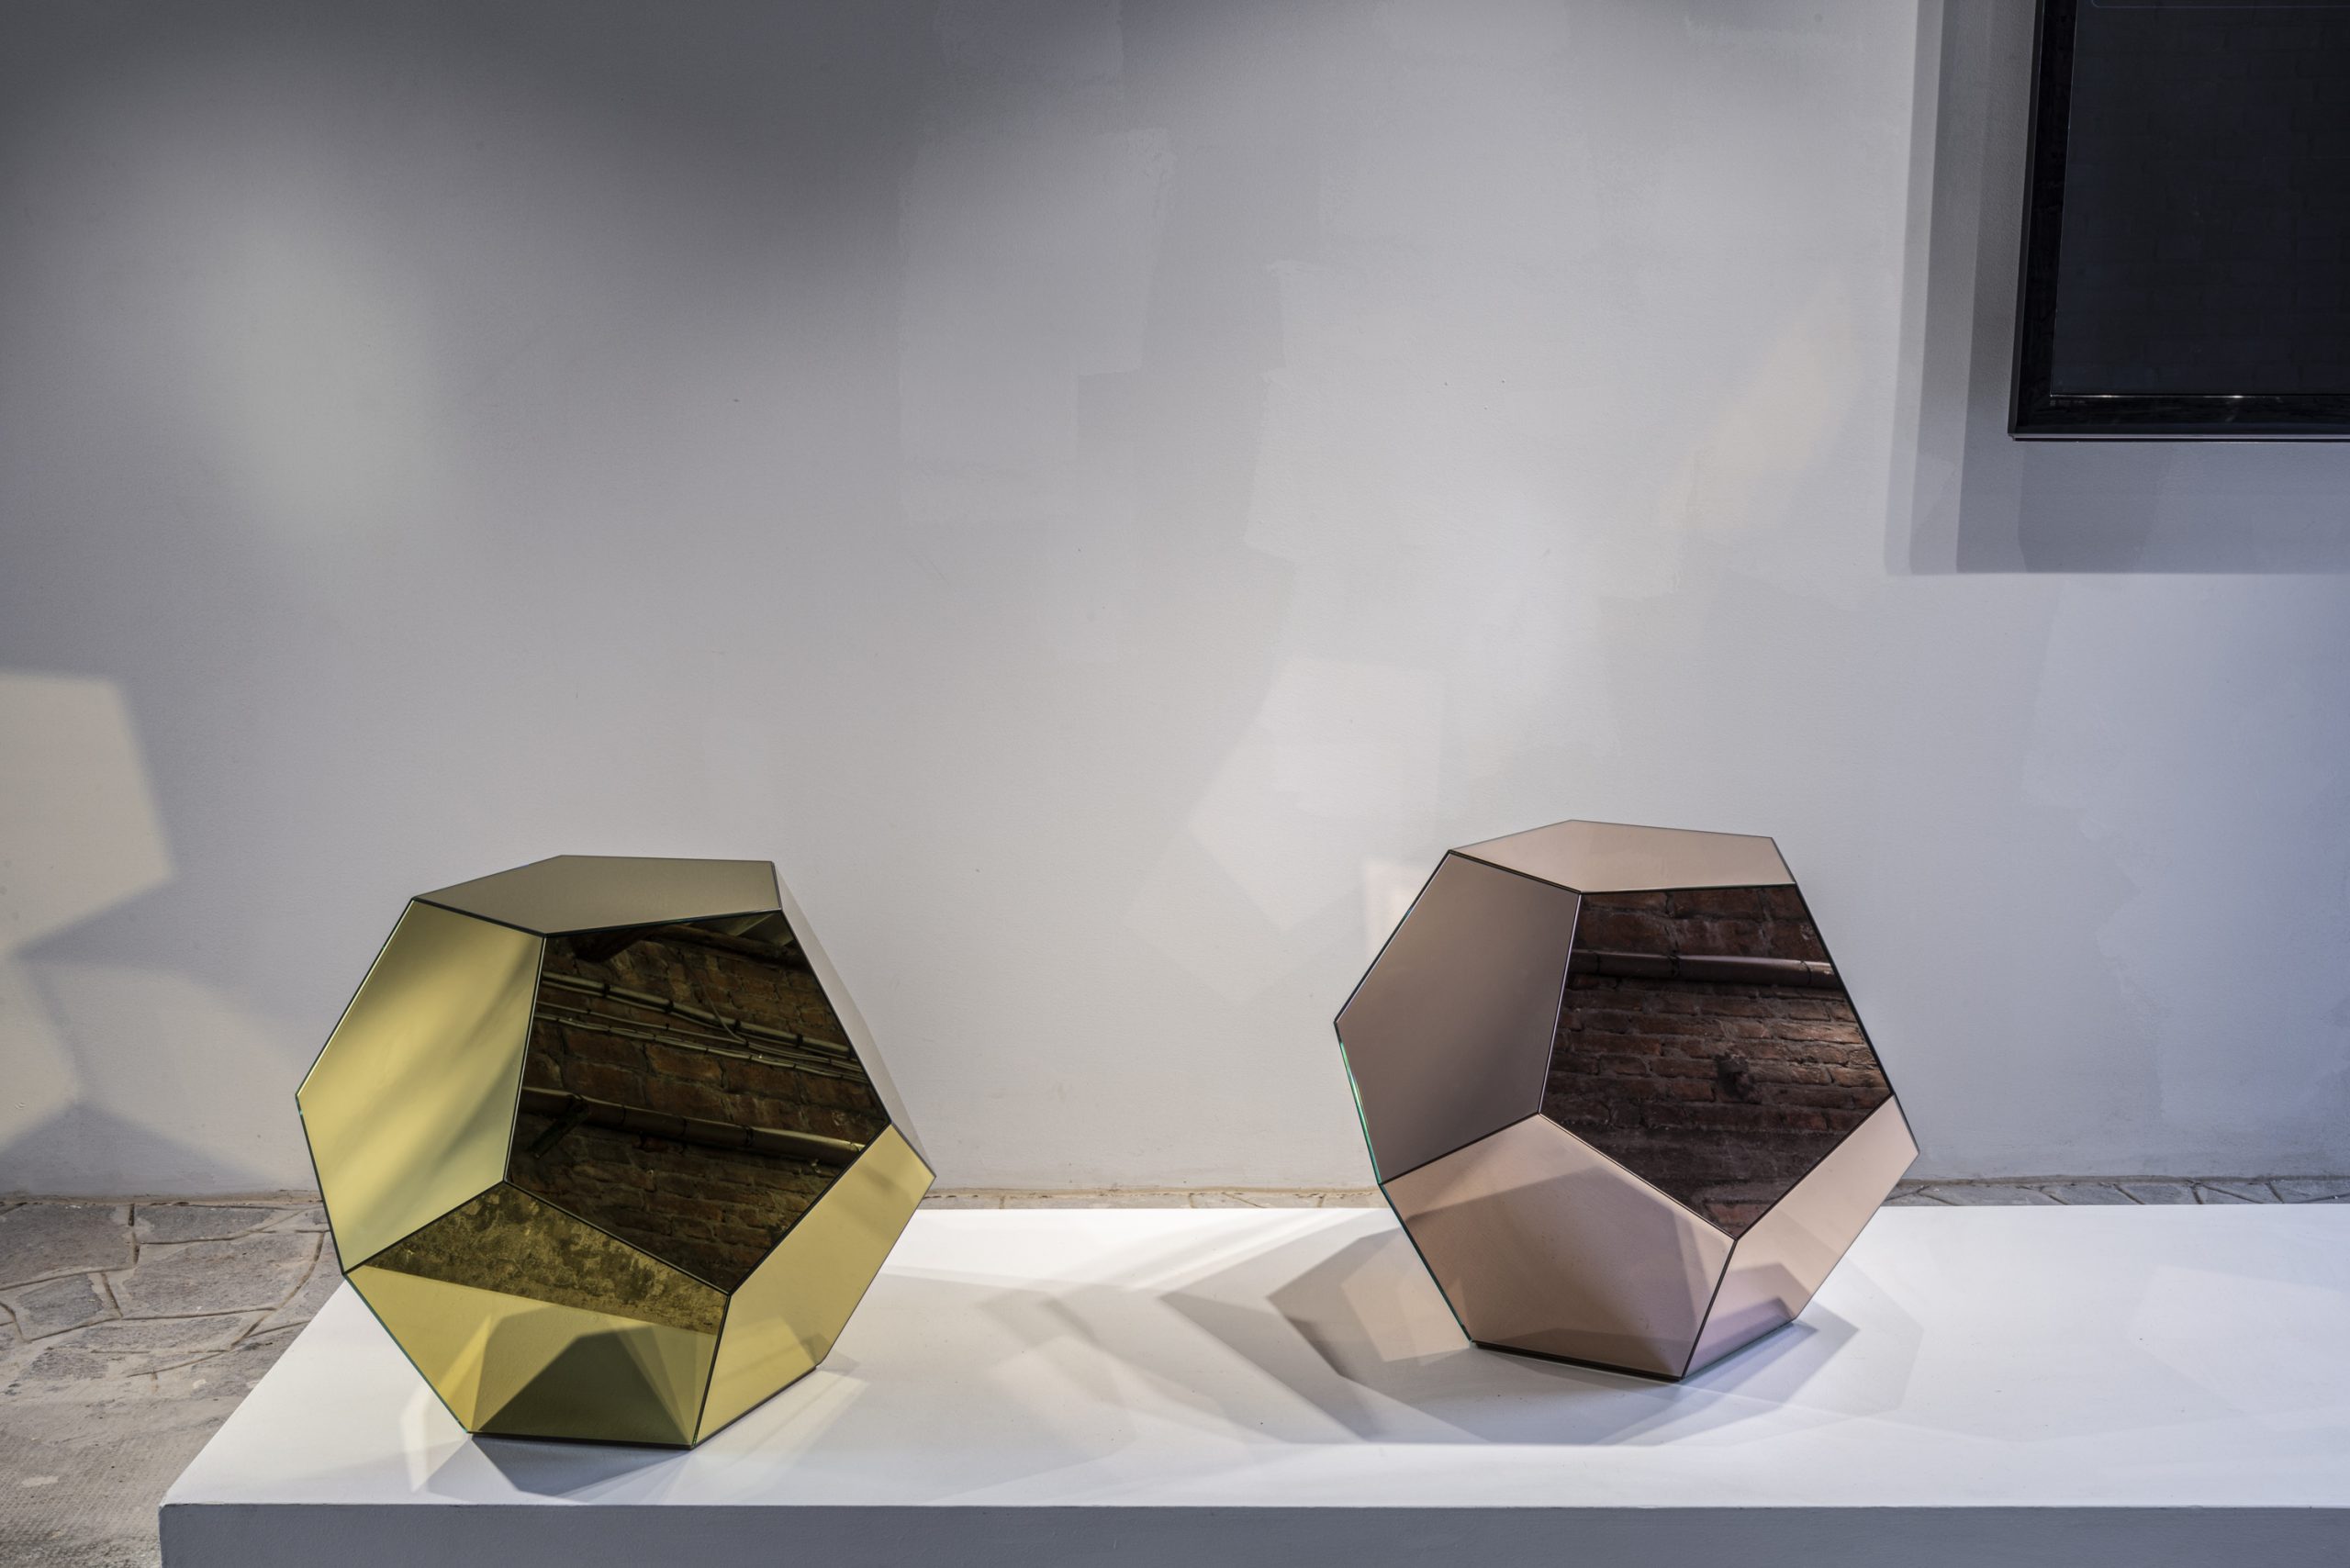 Krista Kim's Mars Polyhedron at Fondazione Berengo Art Space, Murano